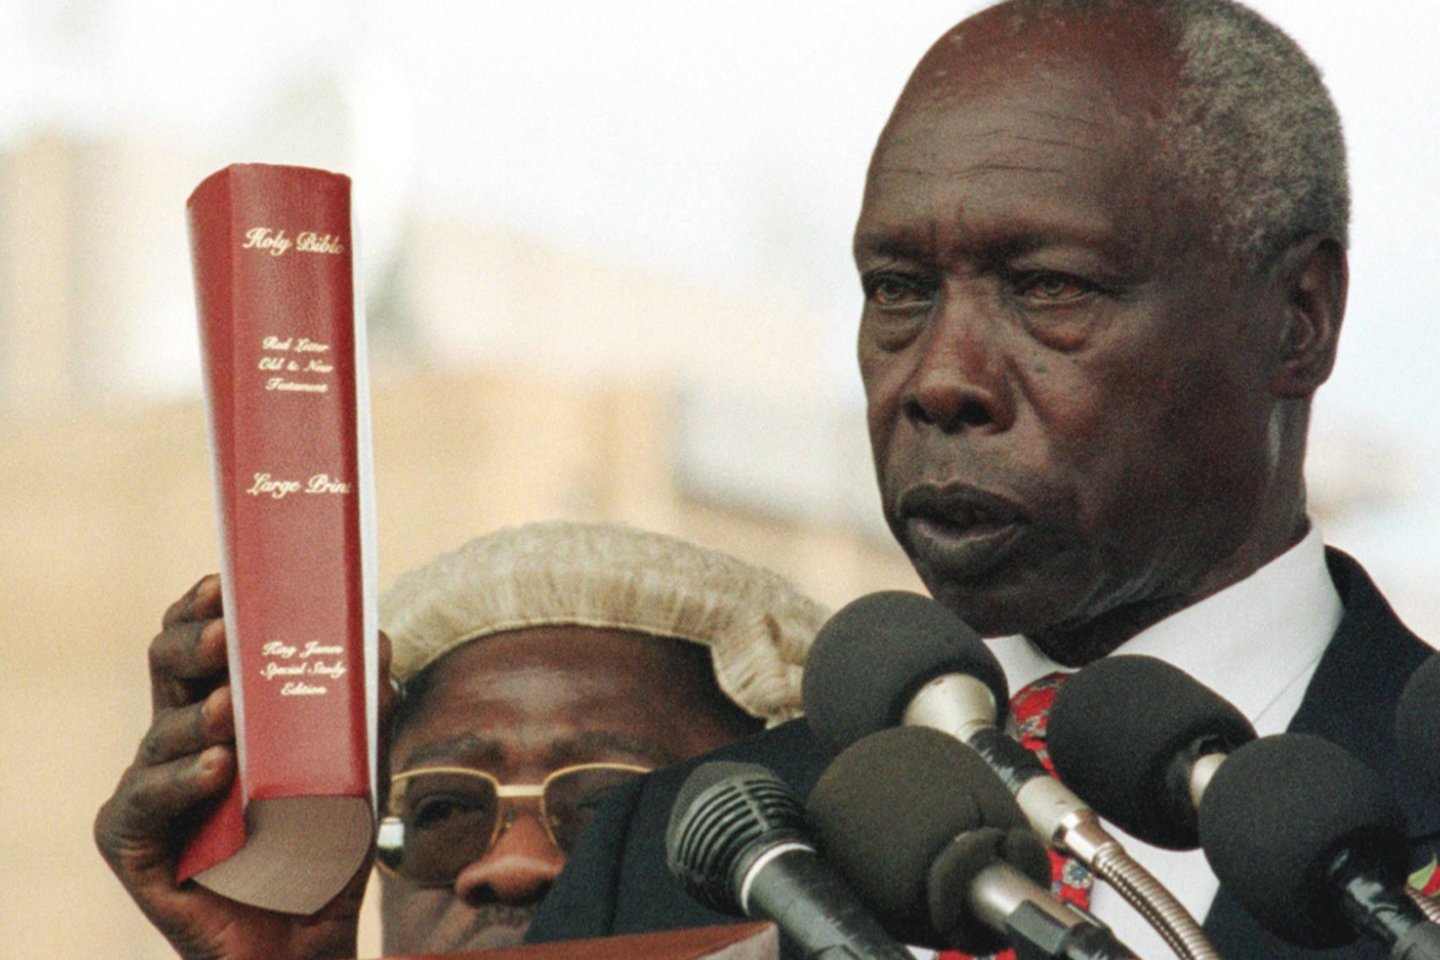  Buvęs Kenijos prezidentas Danielis Arapas Moi, 1978–2002 metais valdęs šalį geležiniu kumščiu, mirė eidamas 96-uosius, antradienį pranešė vienas jos giminaitis ir šaltinis vyriausybėje.<br>AFP/Scanpix nuotr.